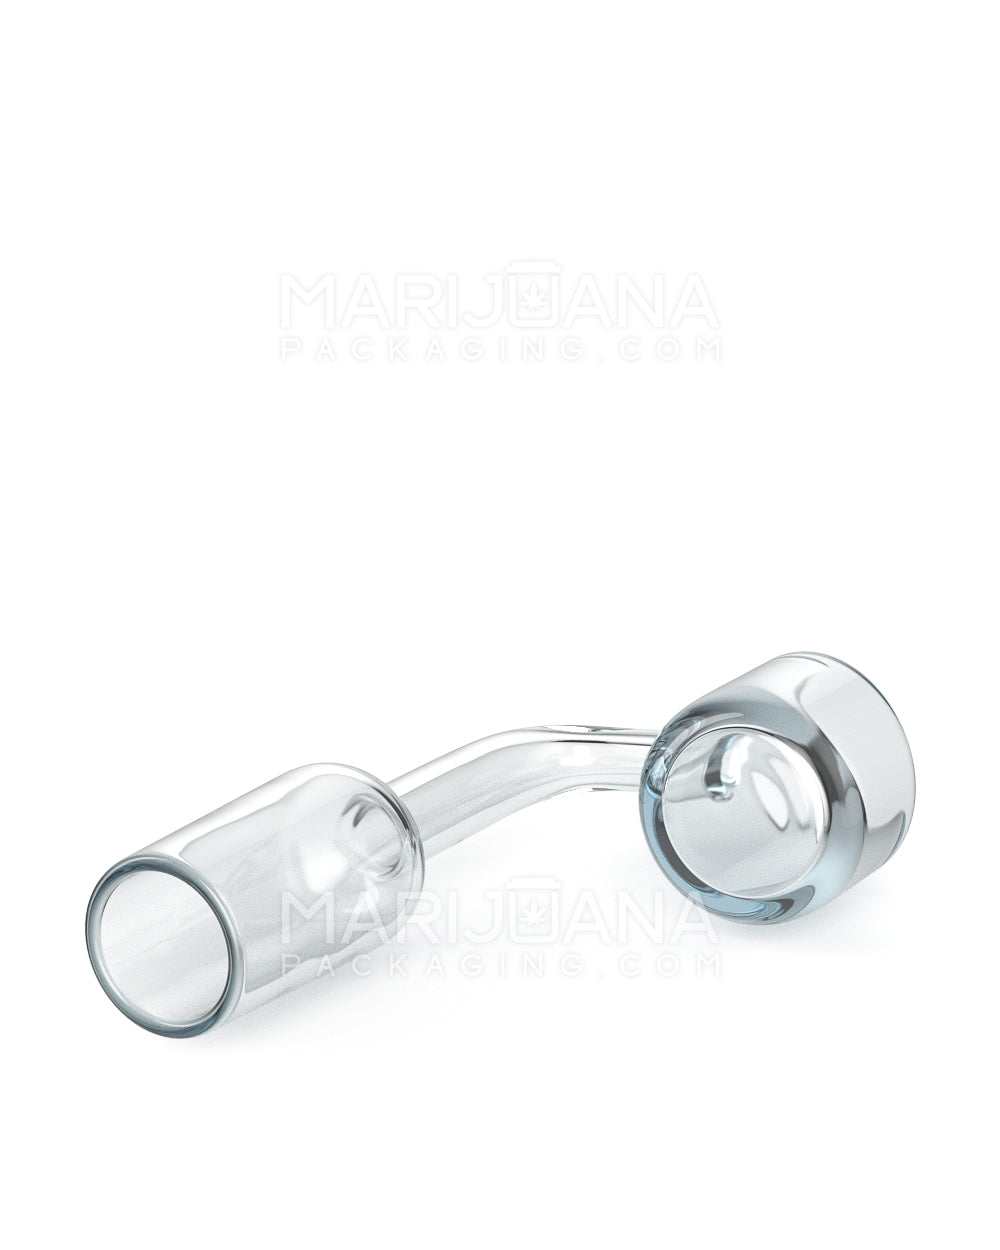 USA Glass | Thick 4mm Quartz Banger Nail | 18mm - 90 Degree - Male - 5